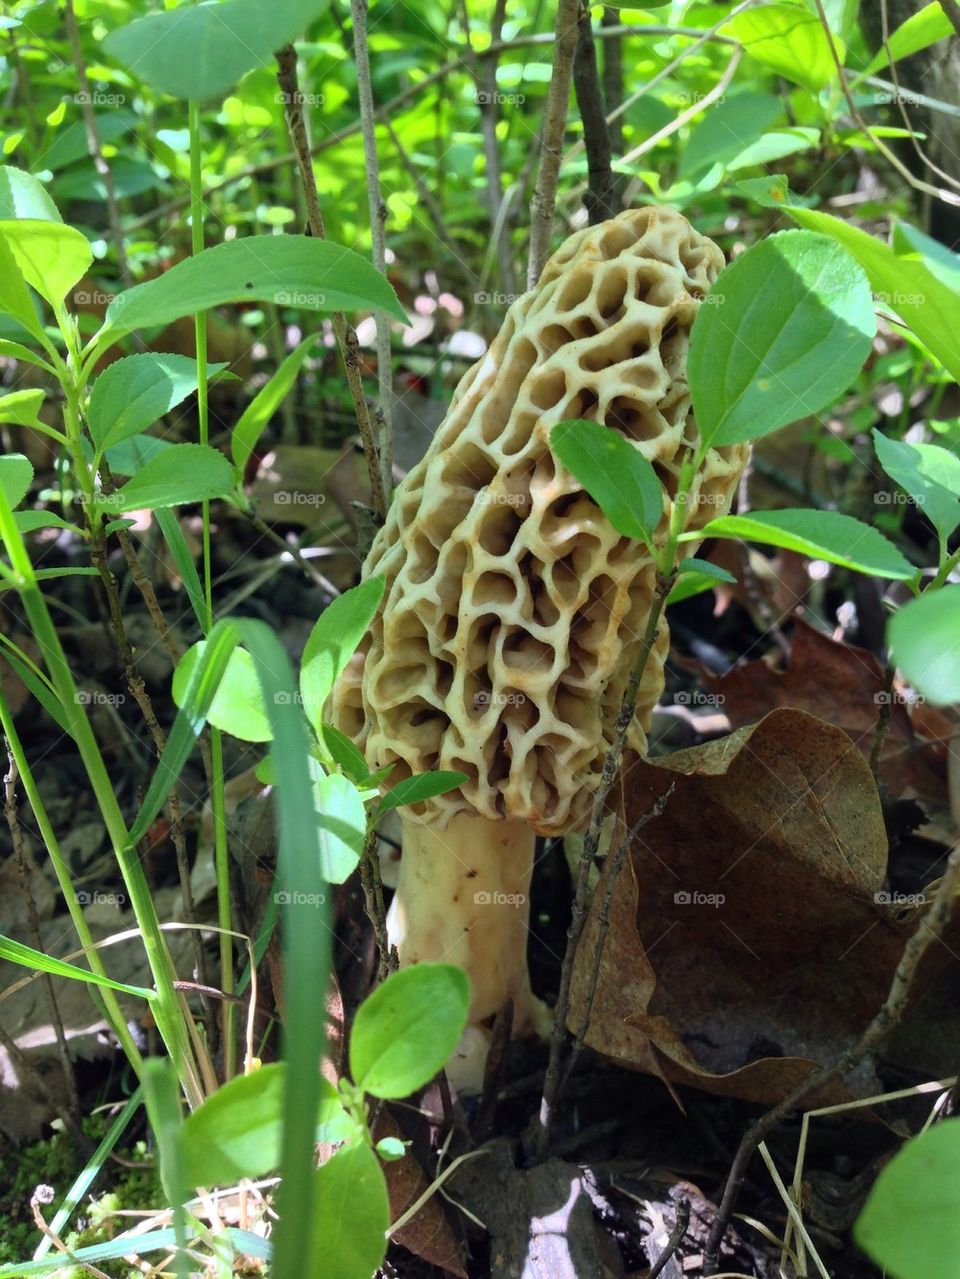 Morel mushroom in May